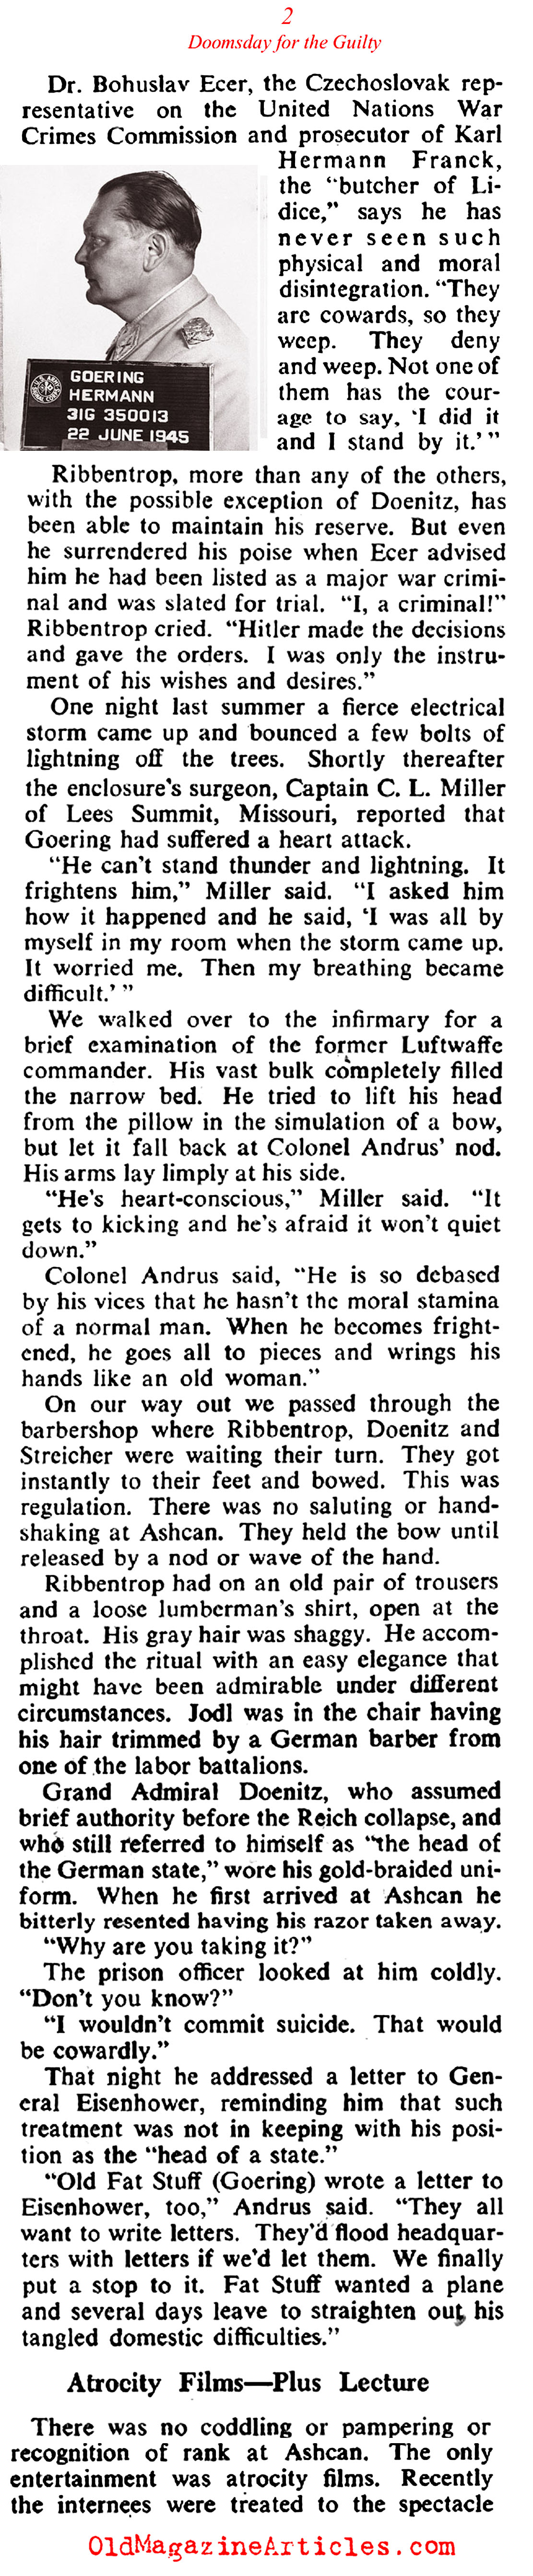 Reichsmarshal Herman Gering Imprisoned (Collier's Magazine, 1946)